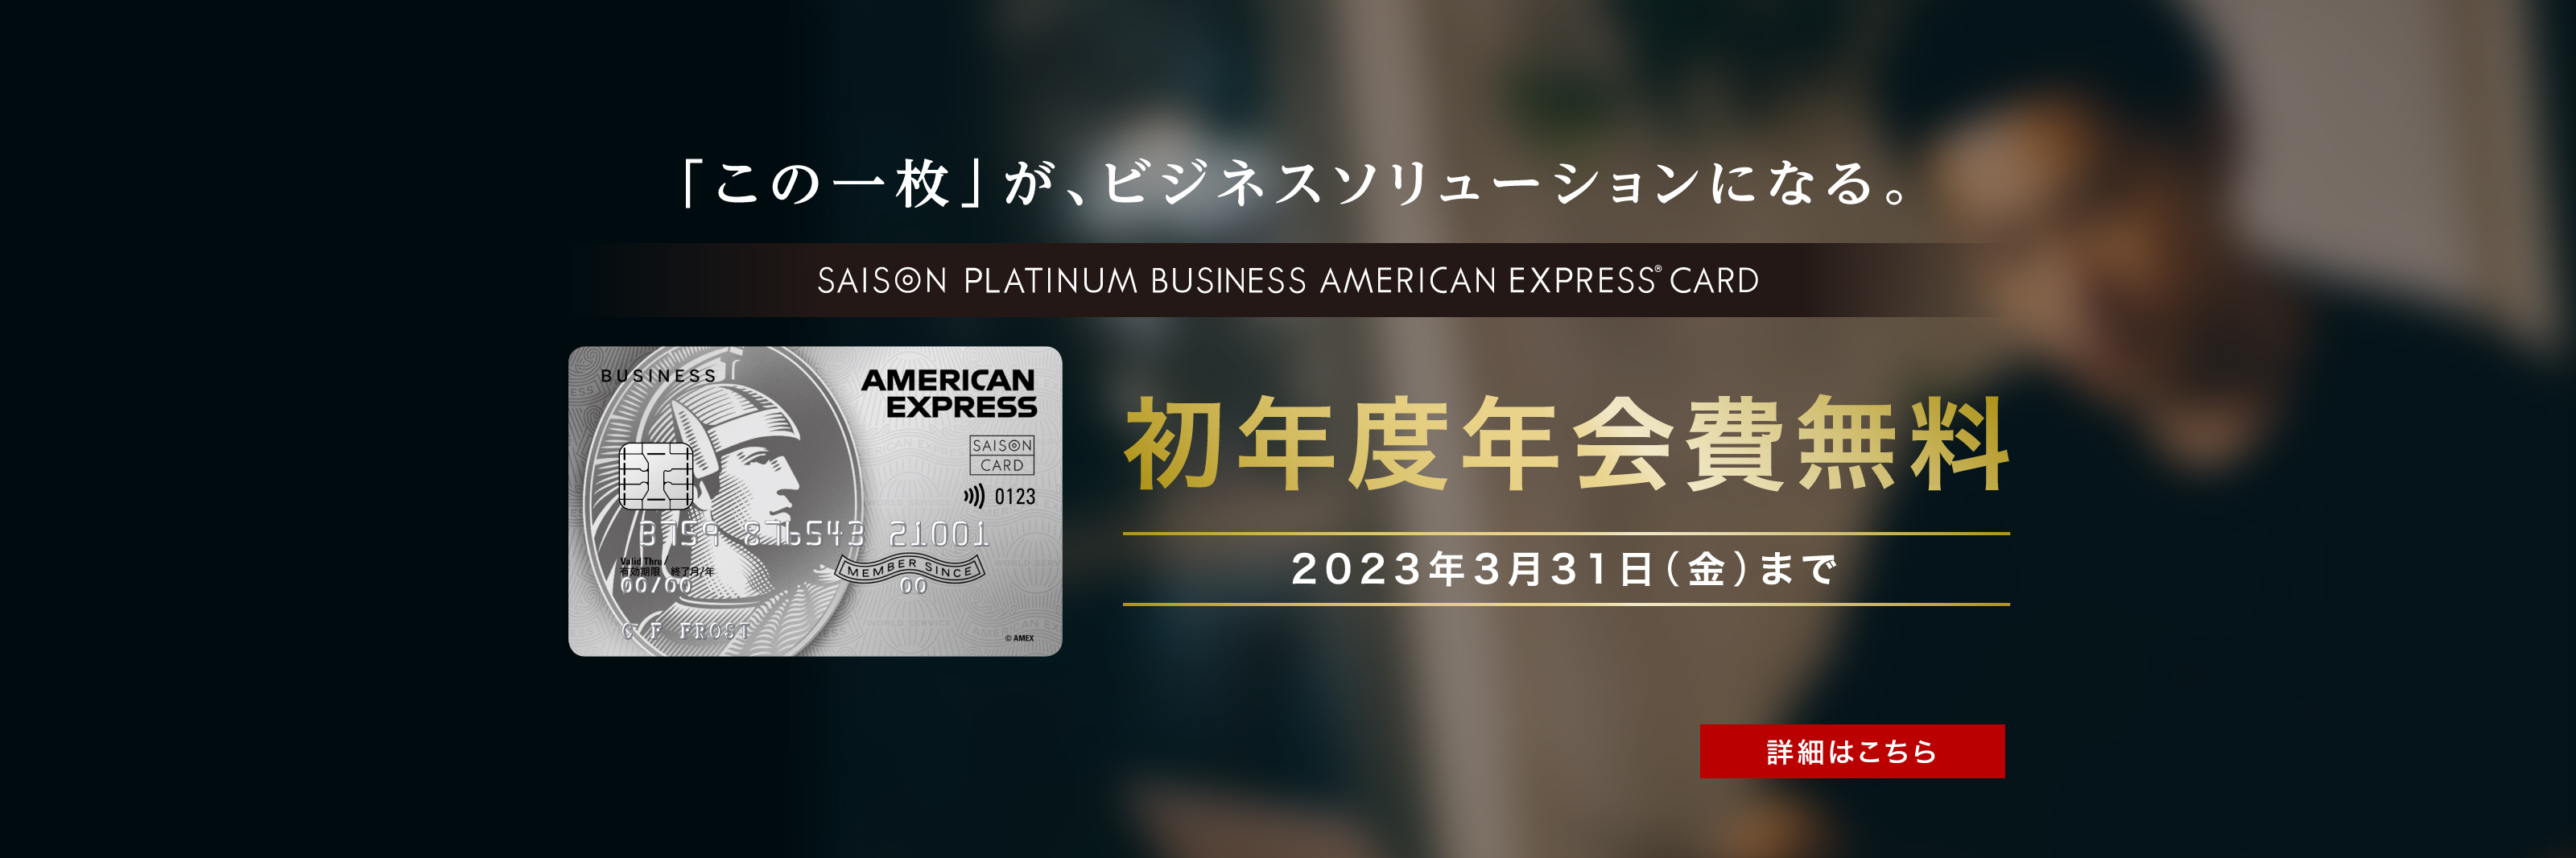 セゾンプラチナ・ビジネス・アメリカン・エキスプレス・カードの初年度年会費無料